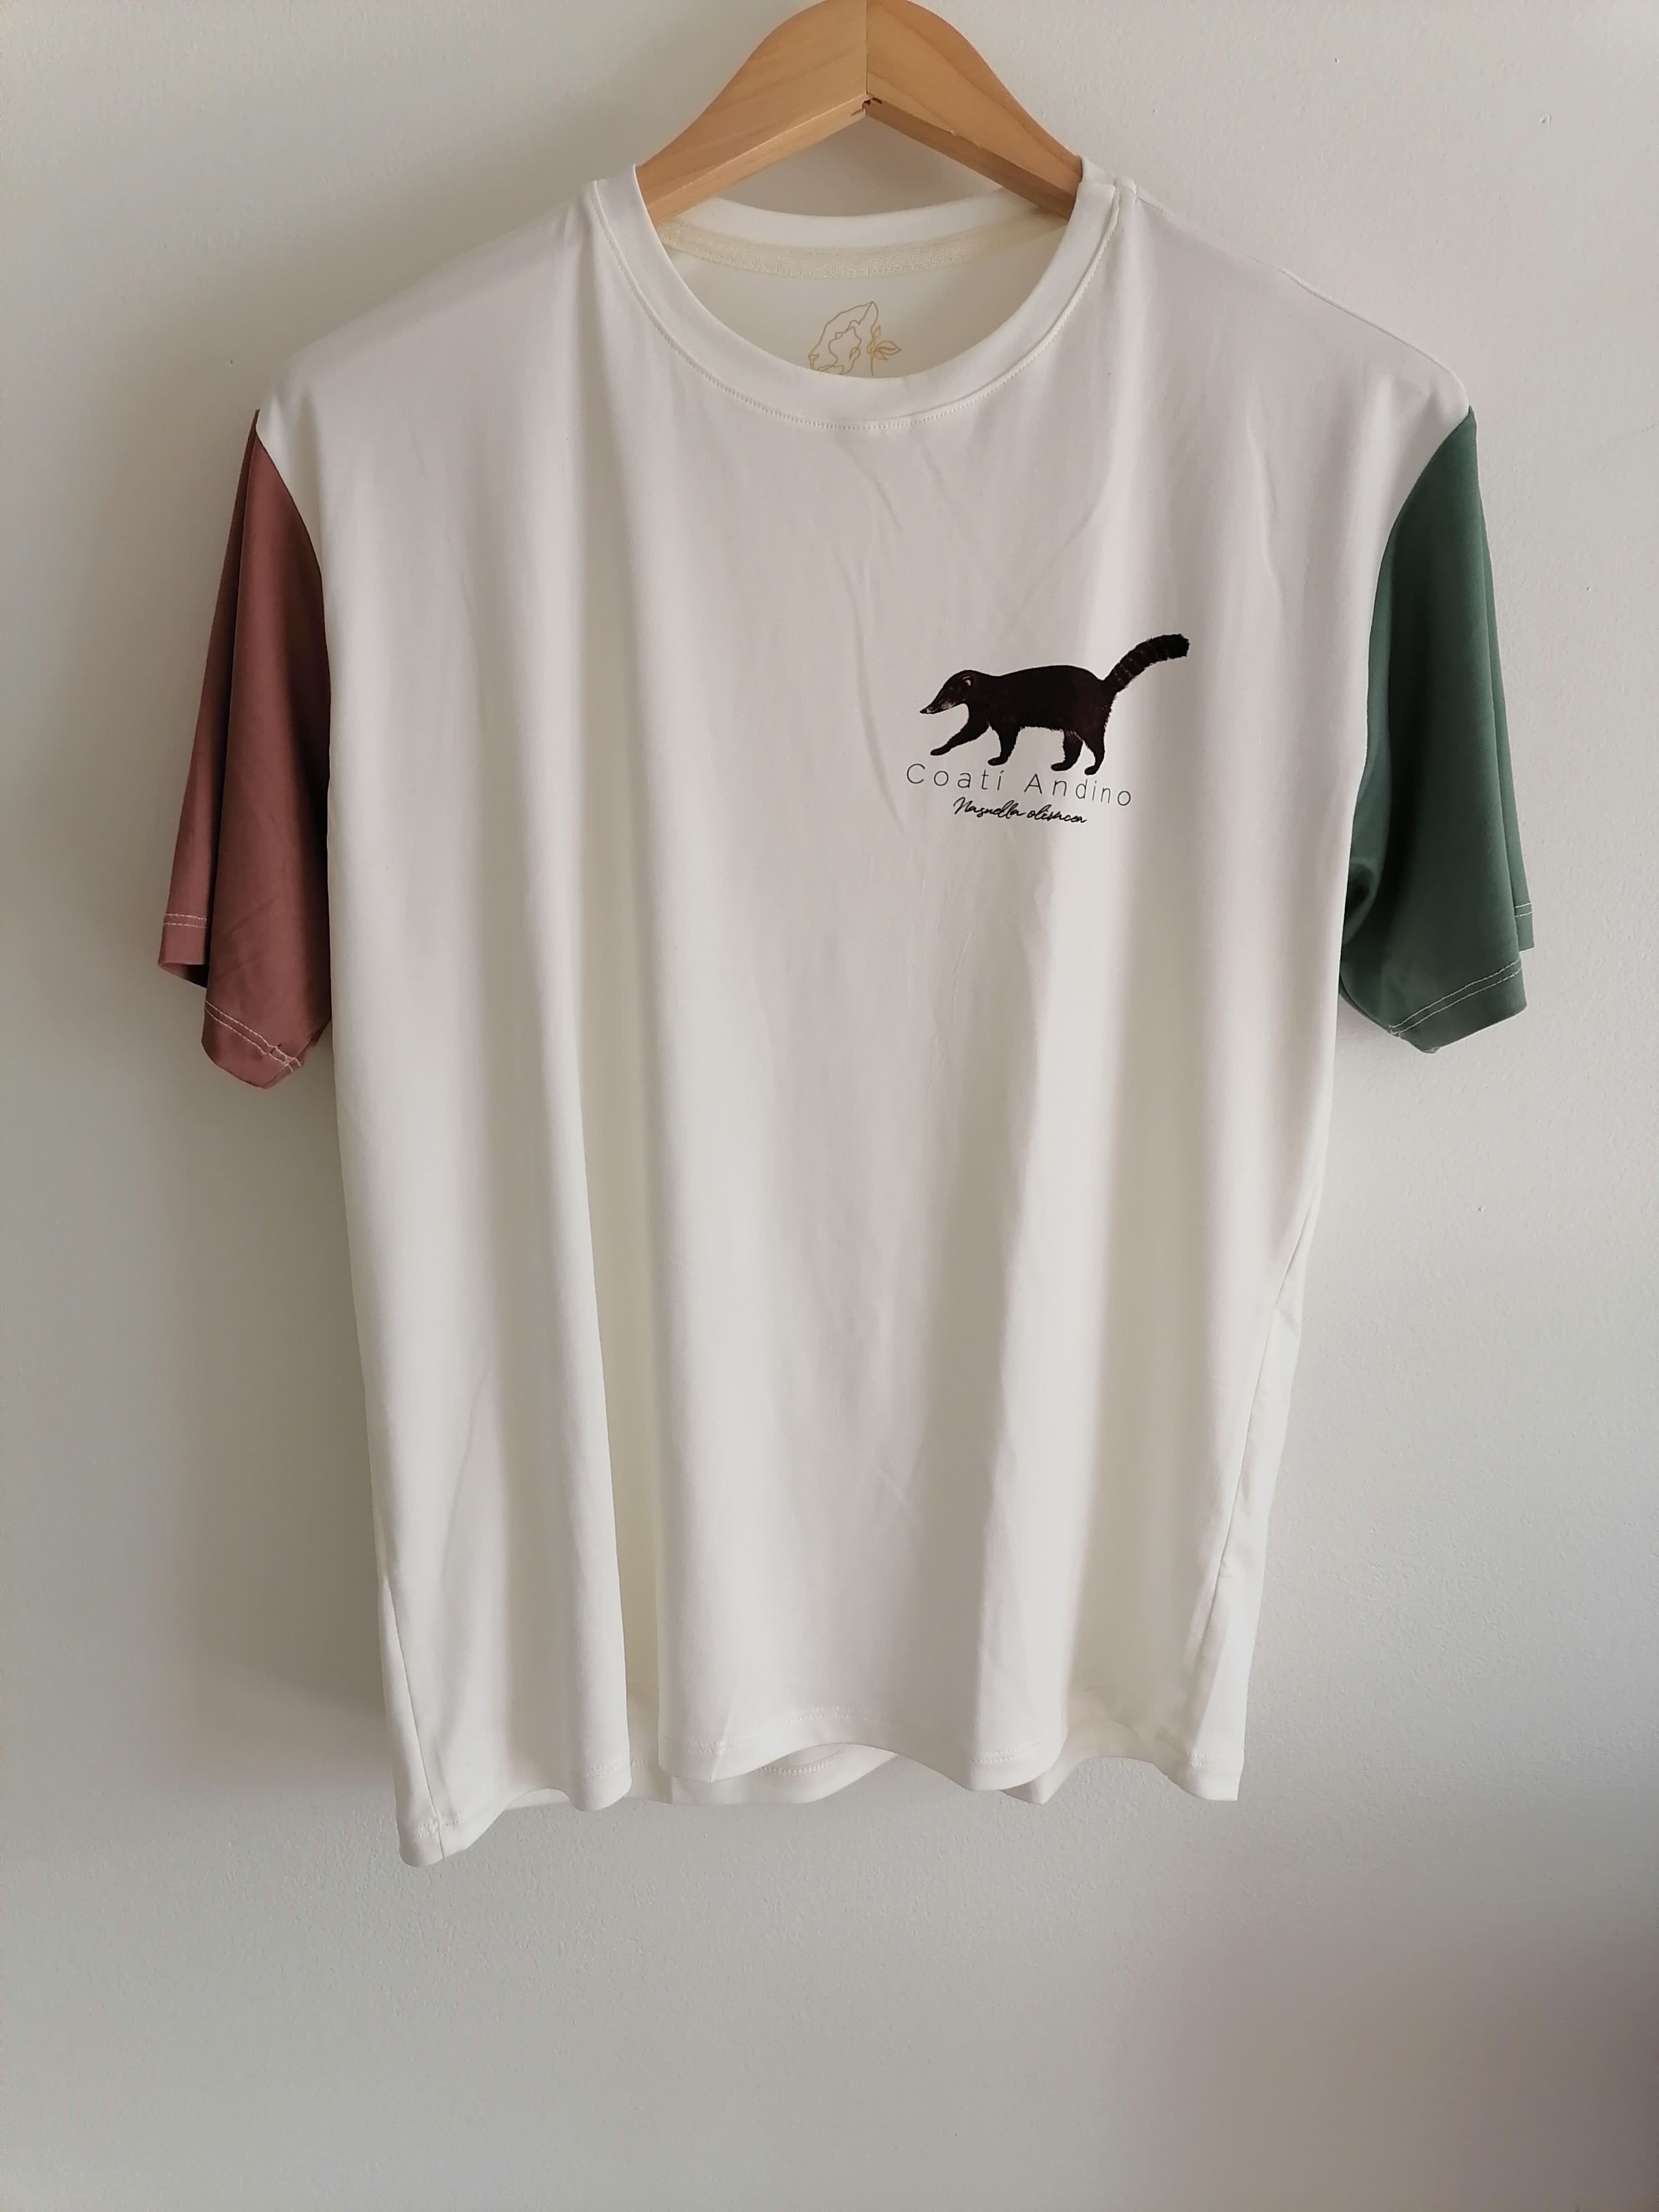 Camiseta unisex de coatí andino